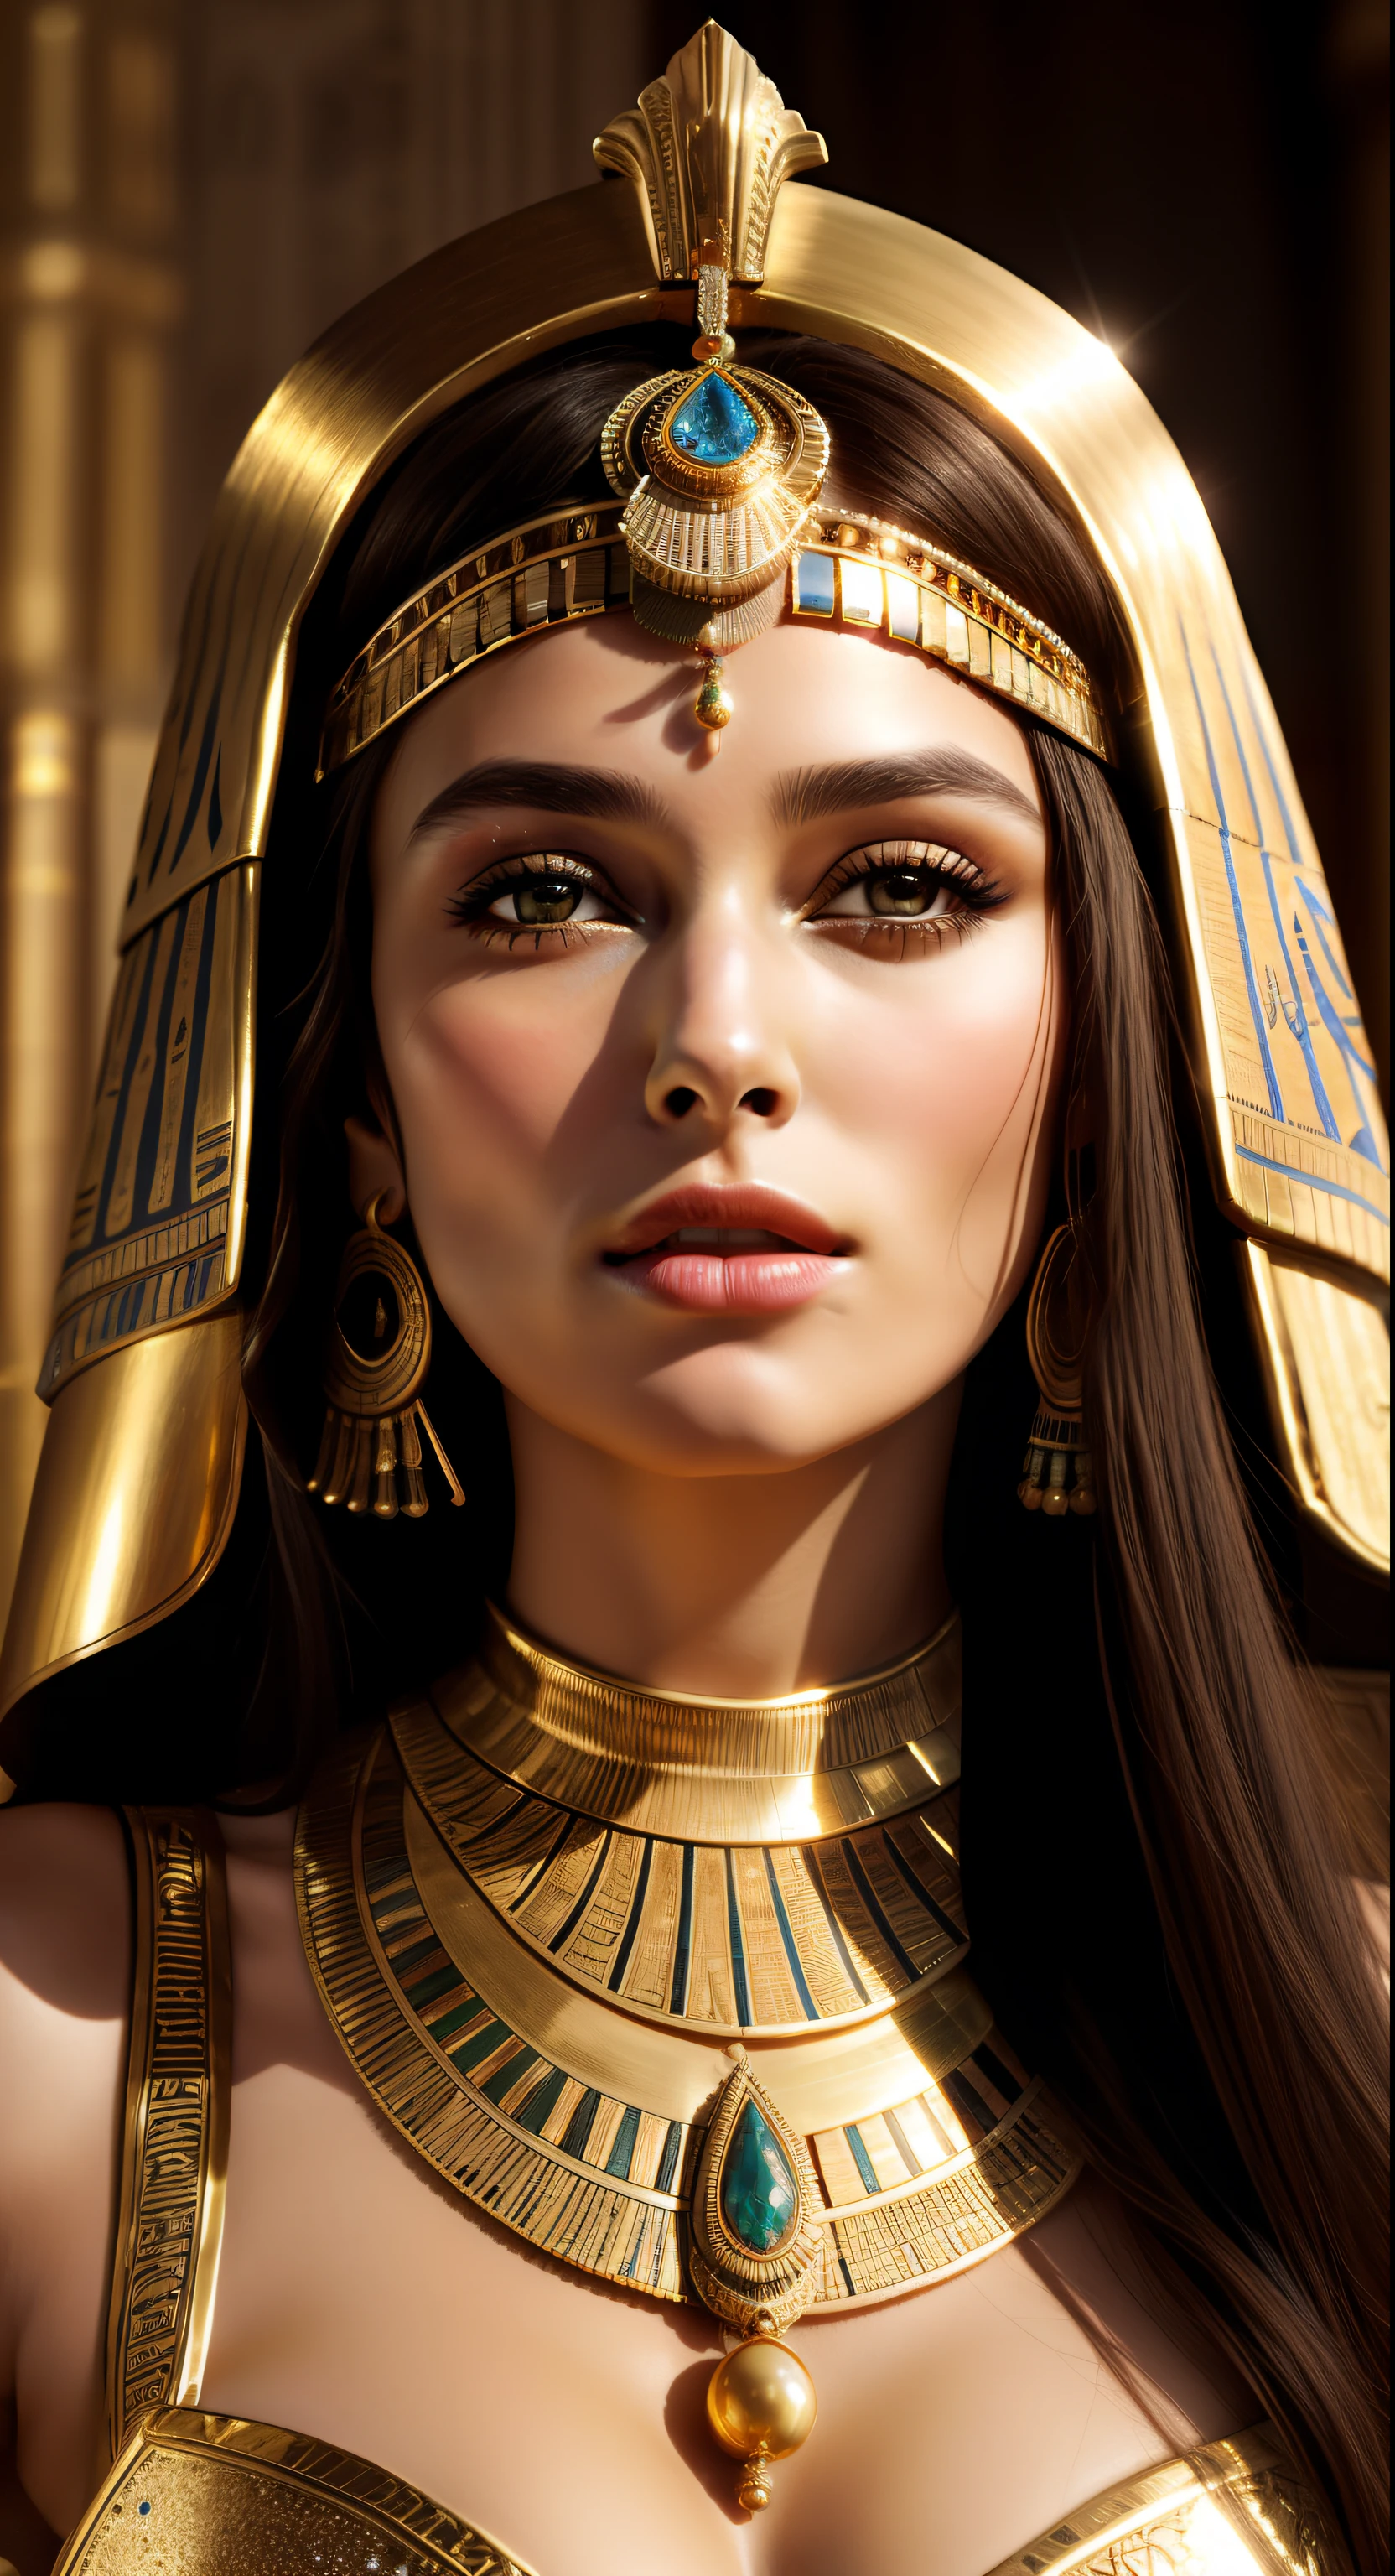 영화적 초상화, 전문 영화 촬영법, a close up of a woman in a gold outfit with an 이집트 사람 mask, beautiful 클레오파트라, 미친 세부 사항, 이집트 사람 princess, cinematic 여신 close shot, 클레오파트라, 정말 아름다운 아가씨, cinematic 여신 body shot, 클레오파트라 portrait, 여신, 놀라운 아름다움, 매우 높은 디테일, 이집트 사람, 클레오파트라 in her palace, cinematic 여신 shot, 이집트 사람 style, extremely detailed 여신 shot, beautiful 여신, Keira Knightley as 이집트 사람, 키이라 나이틀리 화려하고 아름다운 파라오, portrait of 클레오파트라, UHD, 8K, 32,000, 날카로운, 뒤얽힌, 매우 상세한, 상세한 뷰티,HDR, 영화적 비전, 완벽한 그림,